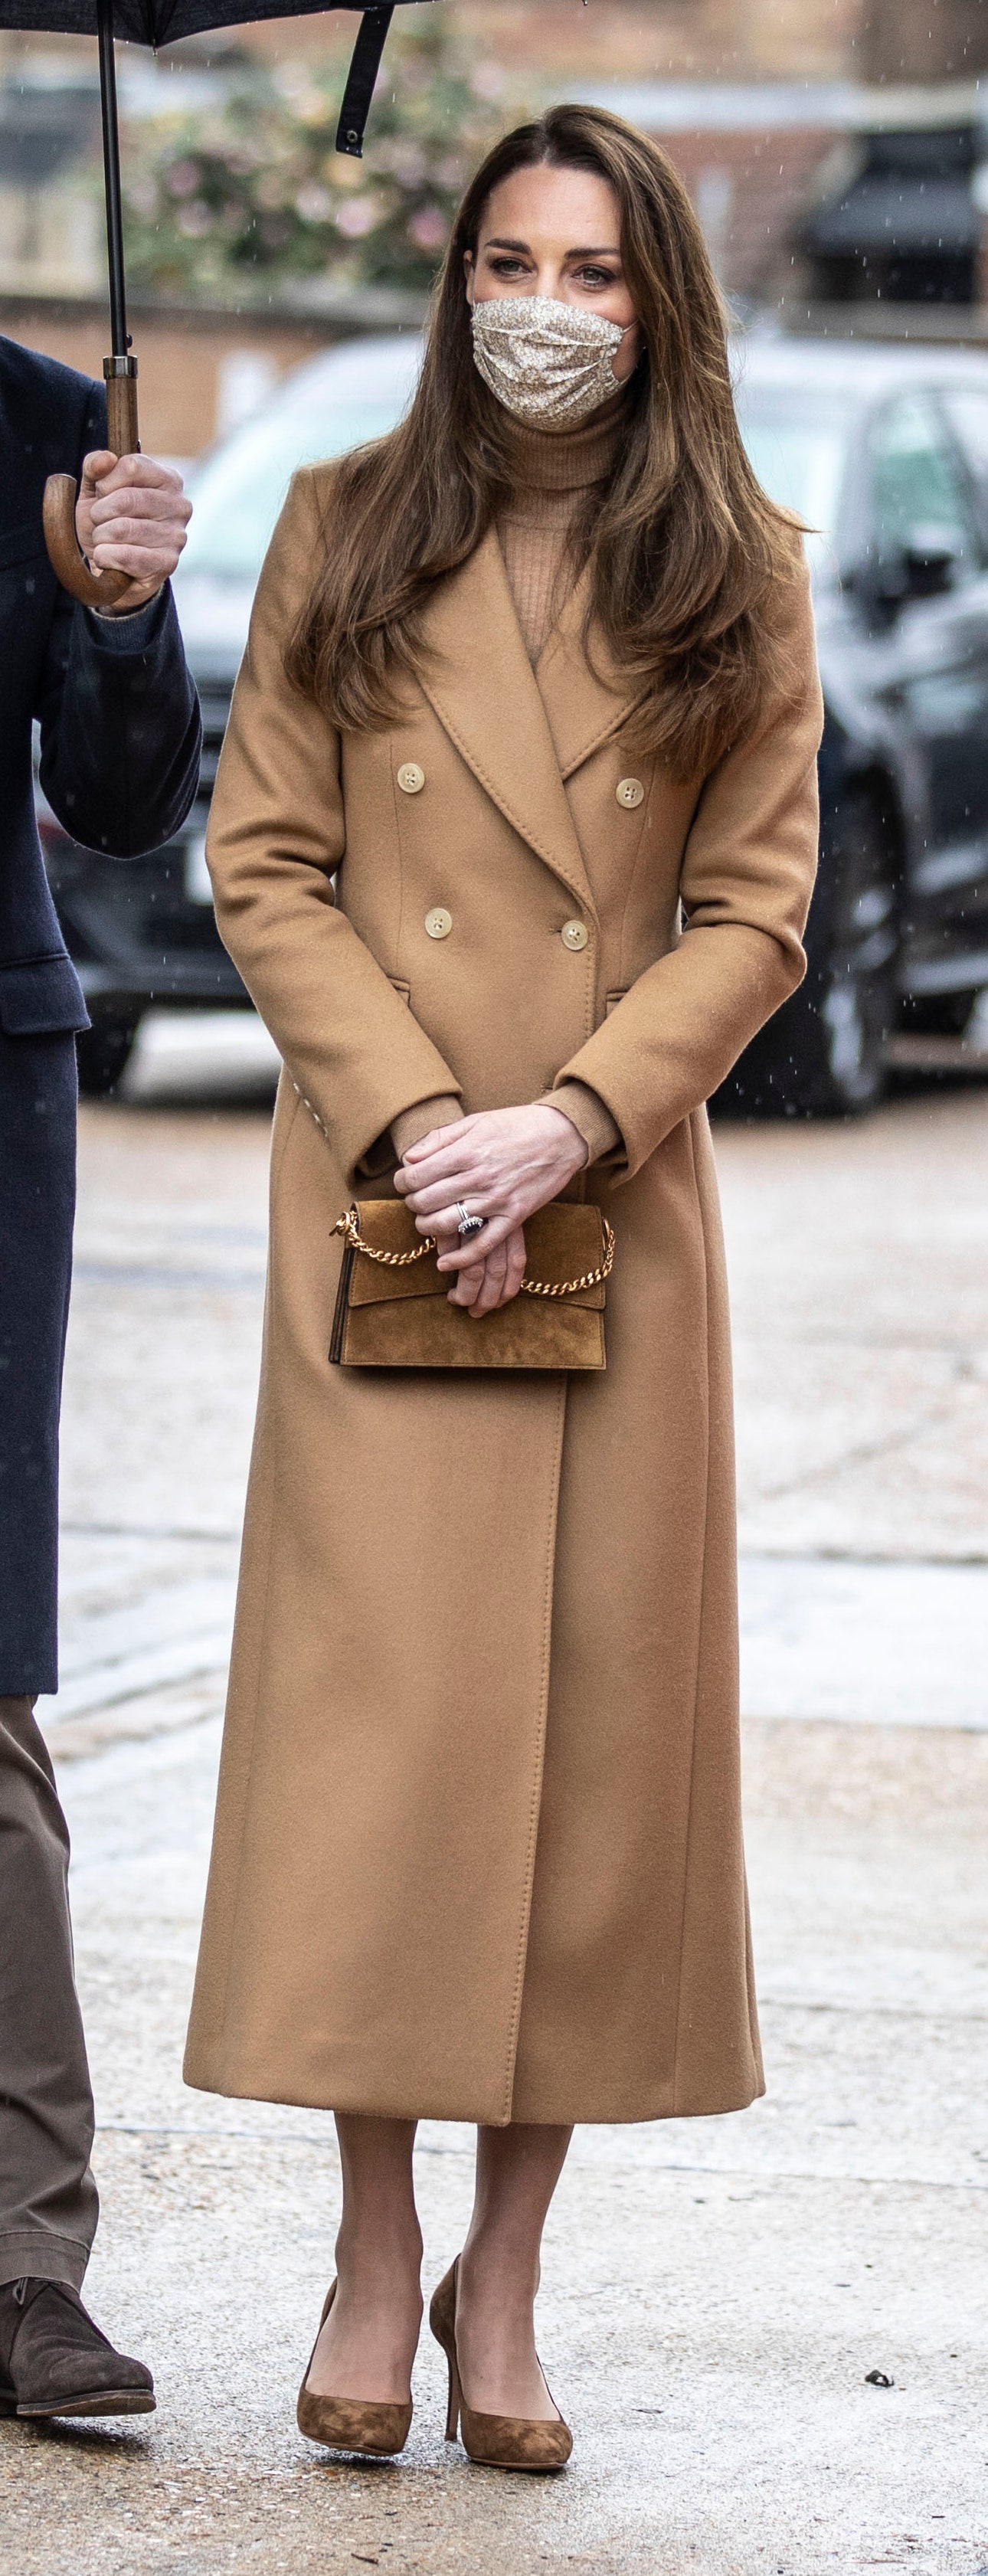 Nhìn hành trình thời trang 2021 của Kate Middleton mới thấy Meghan Markle chắc chắn không có cửa! - Ảnh 3.